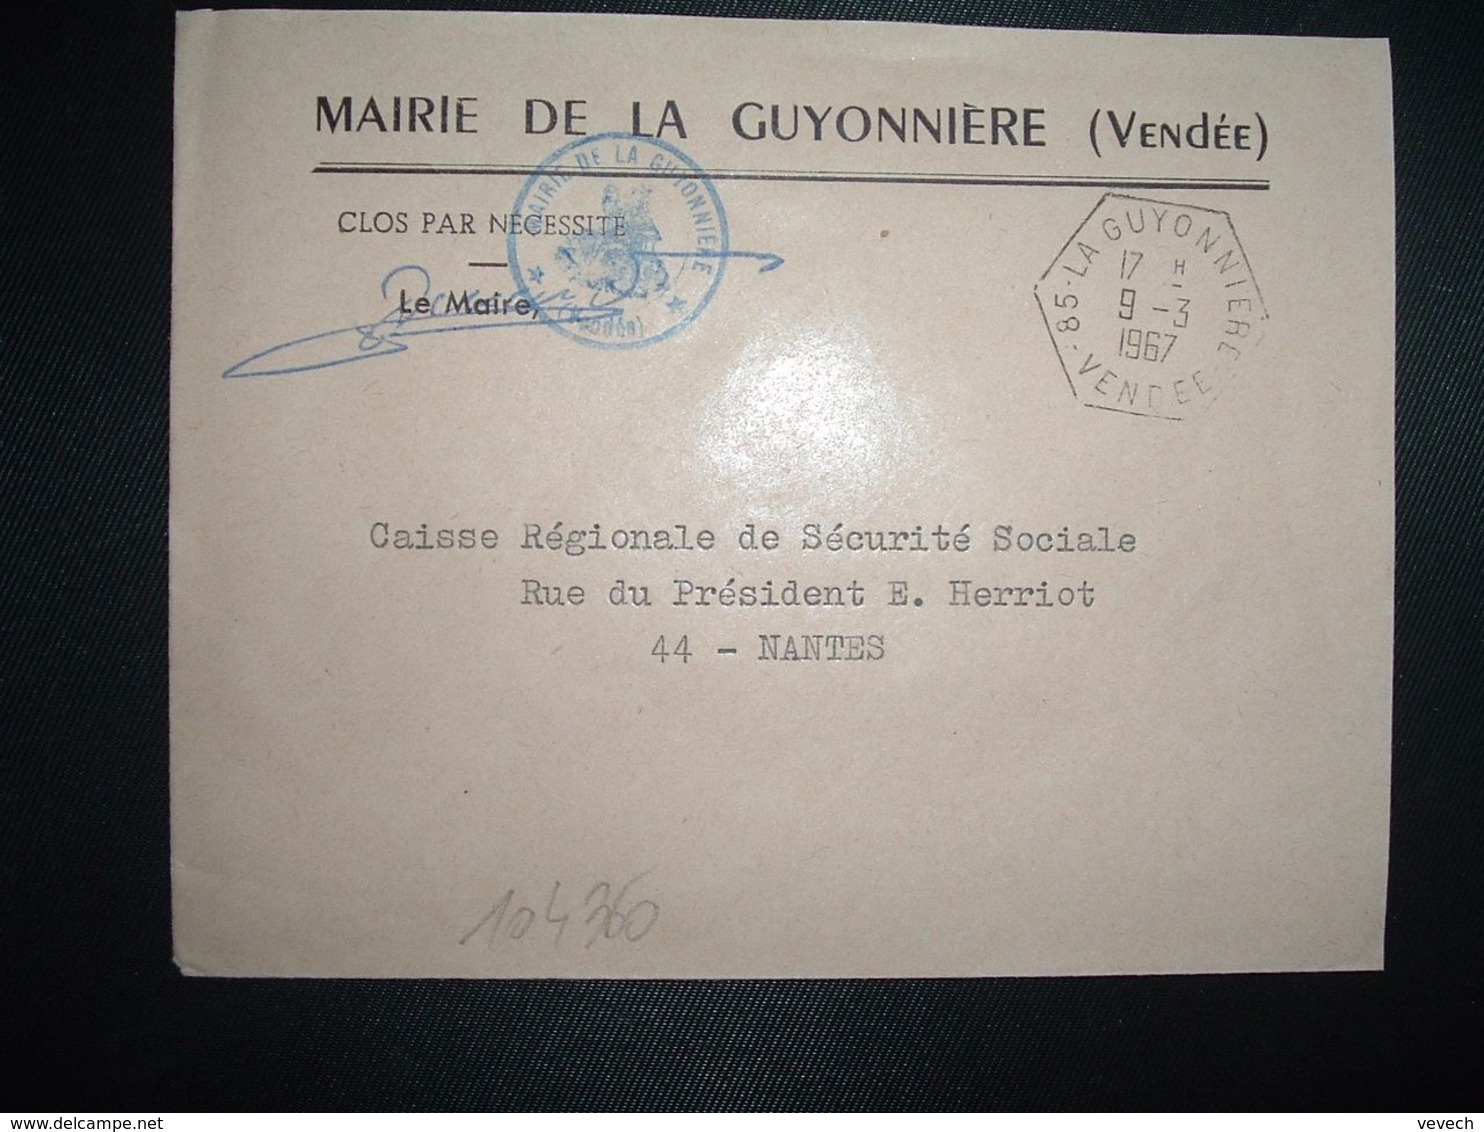 LETTRE MAIRIE OBL. HEXAGONALE 9-3 1967 85 LA GUYONNIERE VENDEE - Cachets Manuels